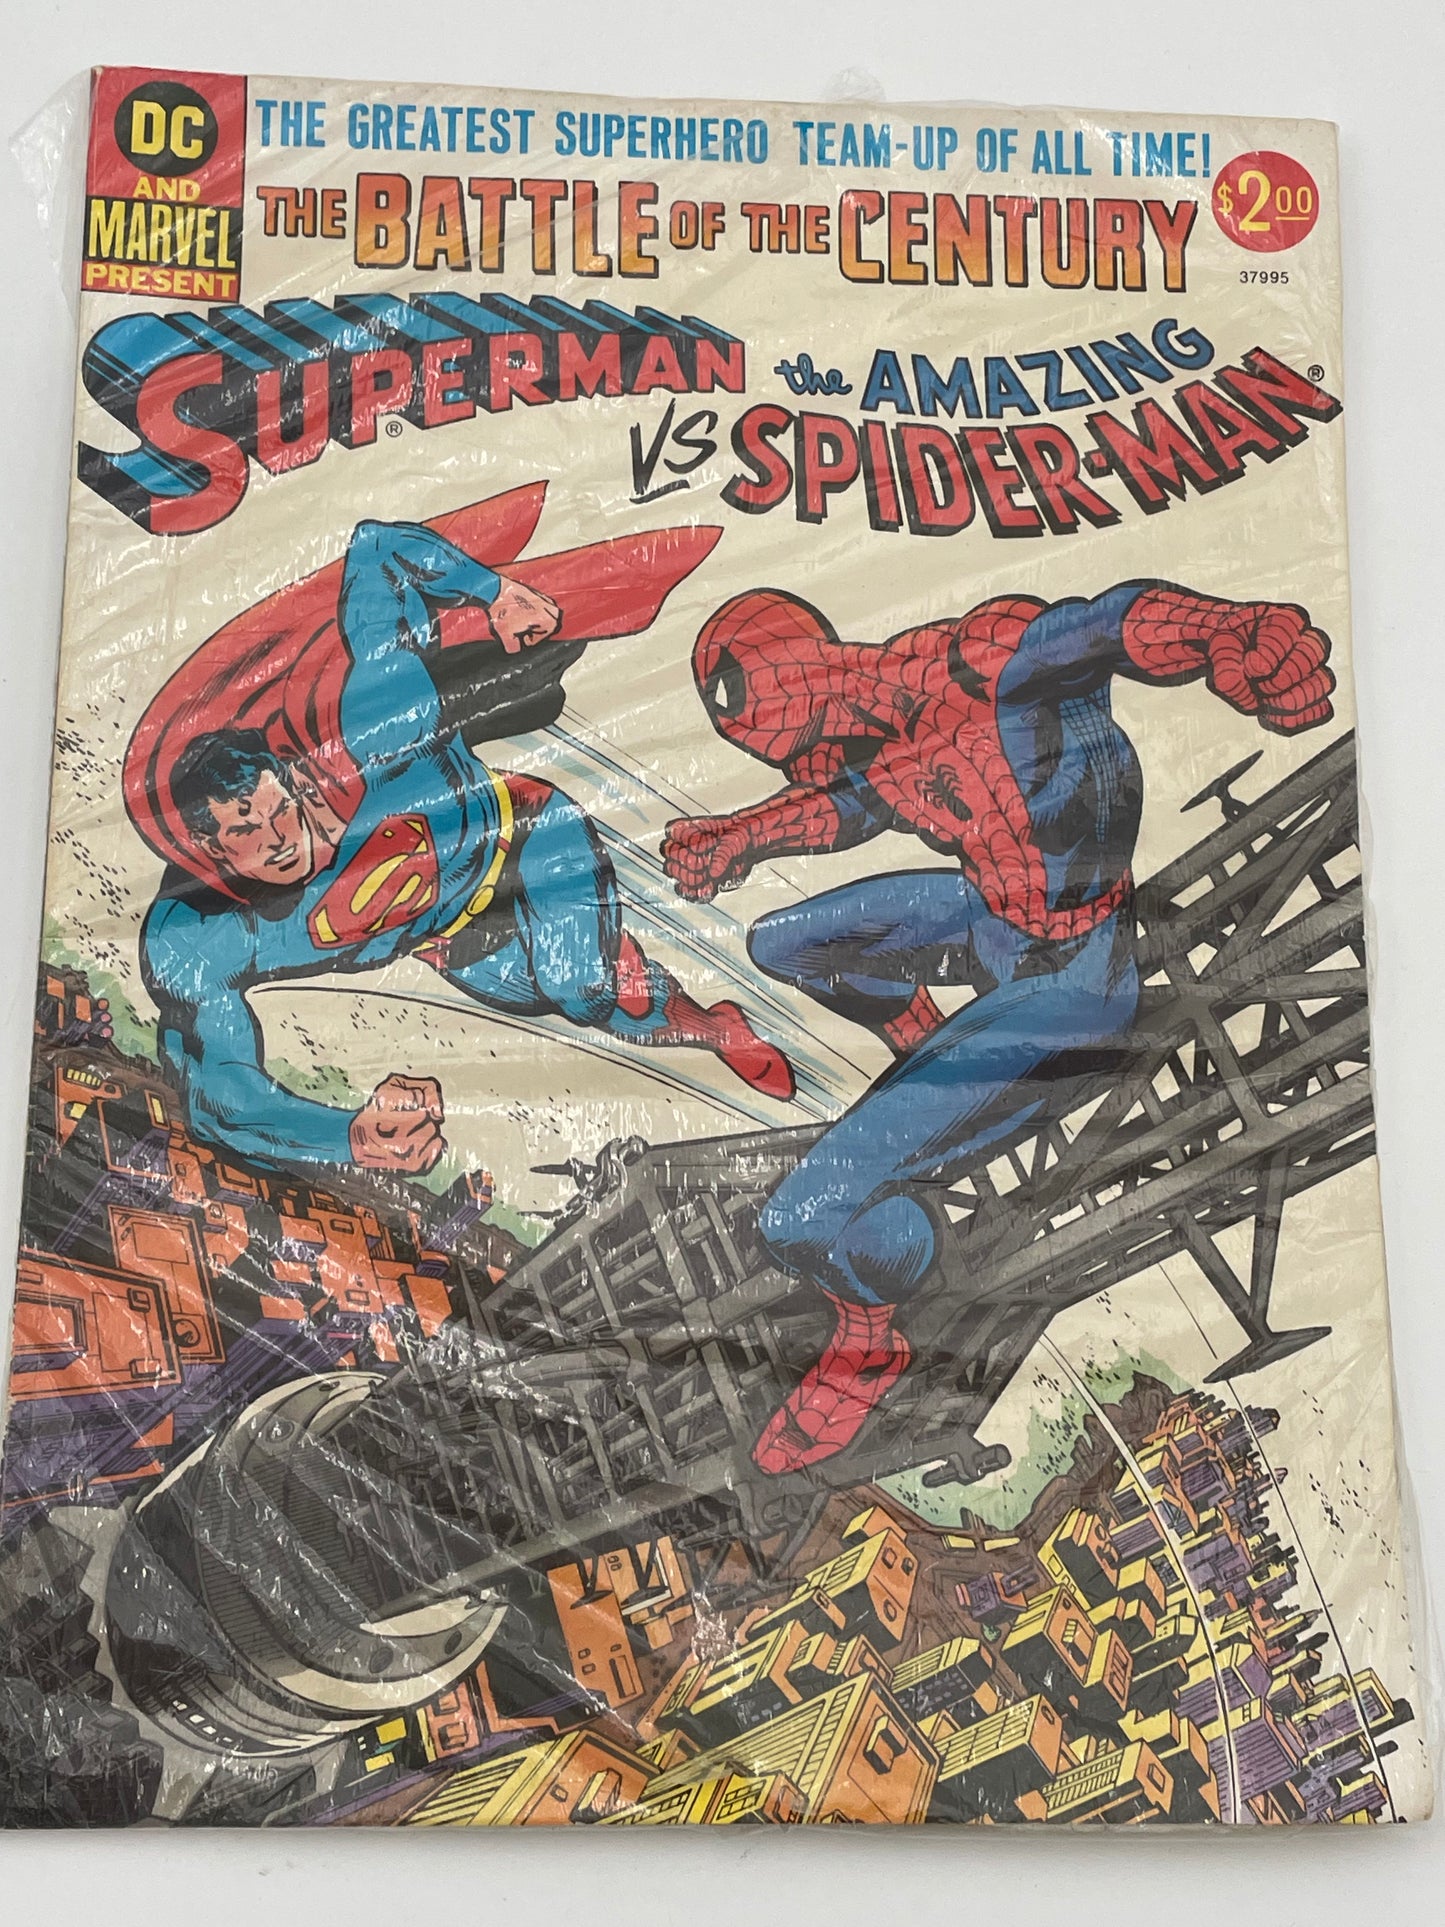 Superman Vs Spiderman Jumbo Edition - January 1976 #101842